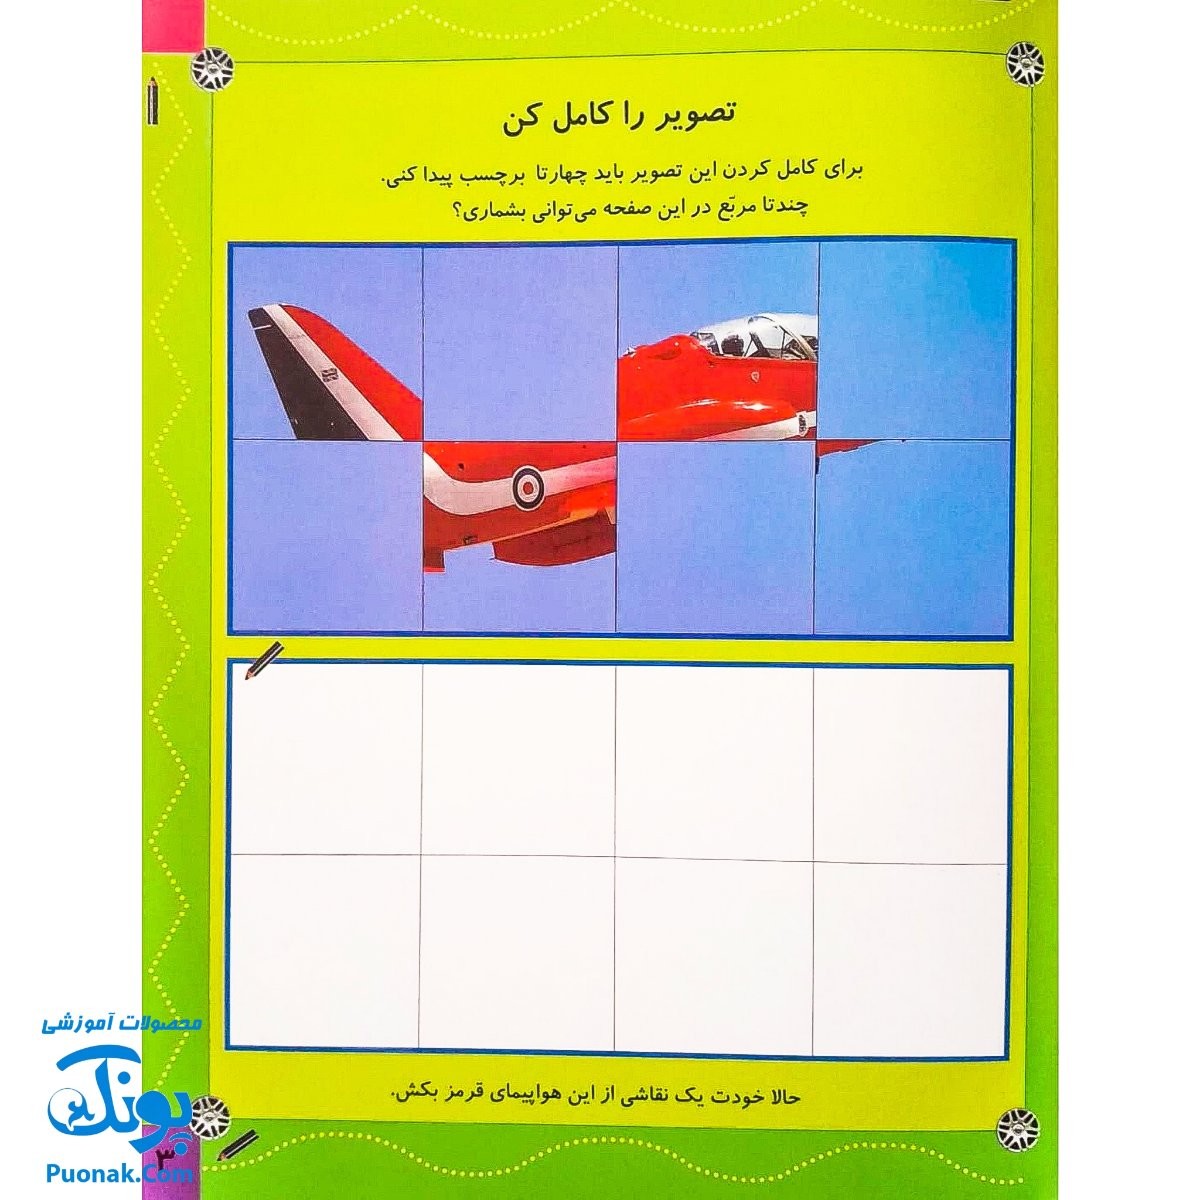 کتاب بازی سرگرمی با برچسب هواپیماها با بیش از ۸۰ برچسب